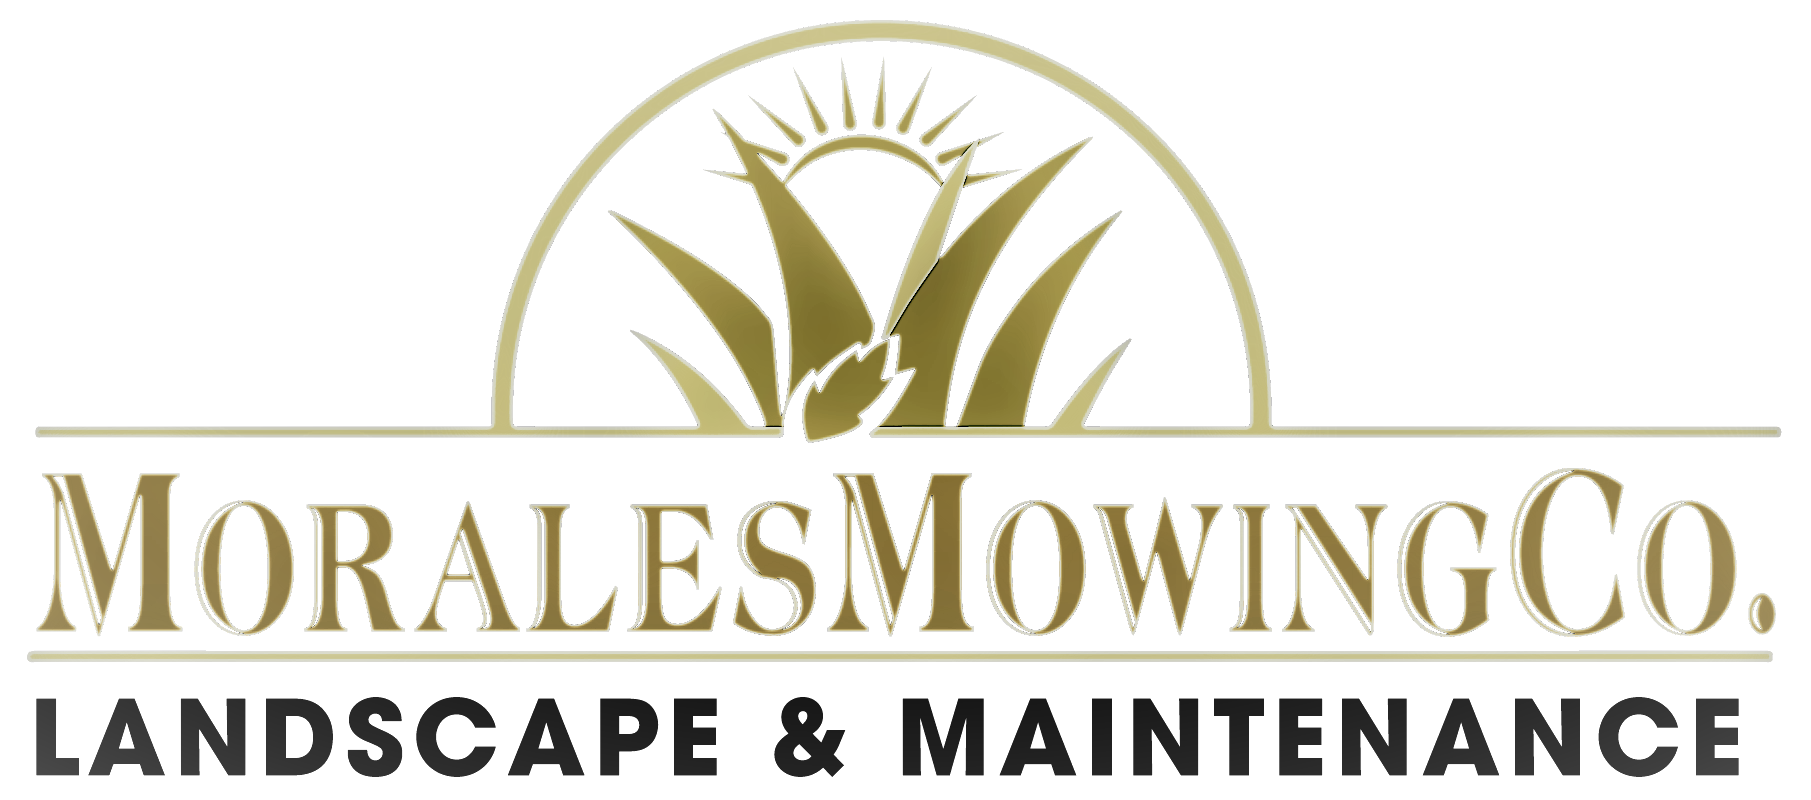 Morales Mowing-Unlicensed Contractor Logo